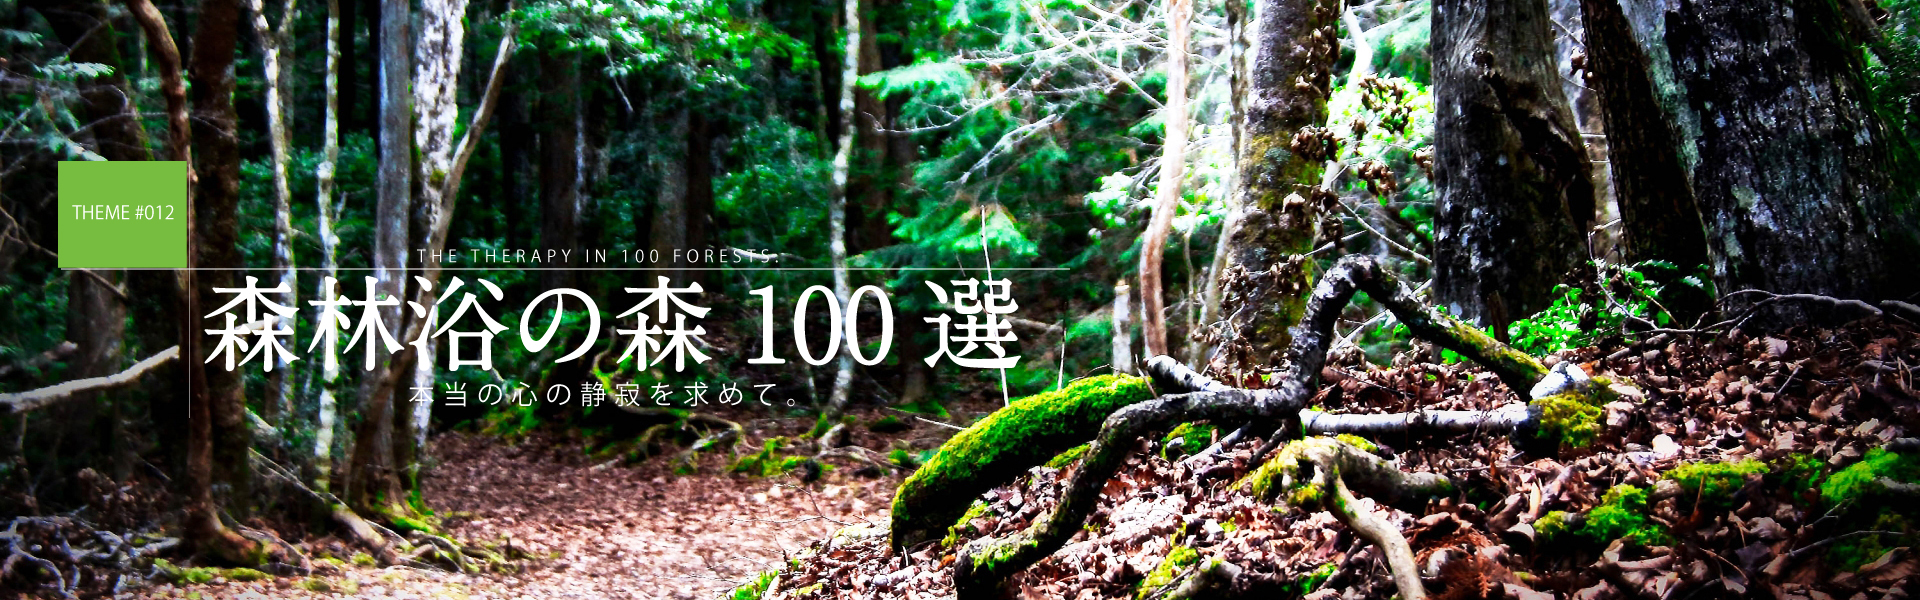 森林浴の森100選